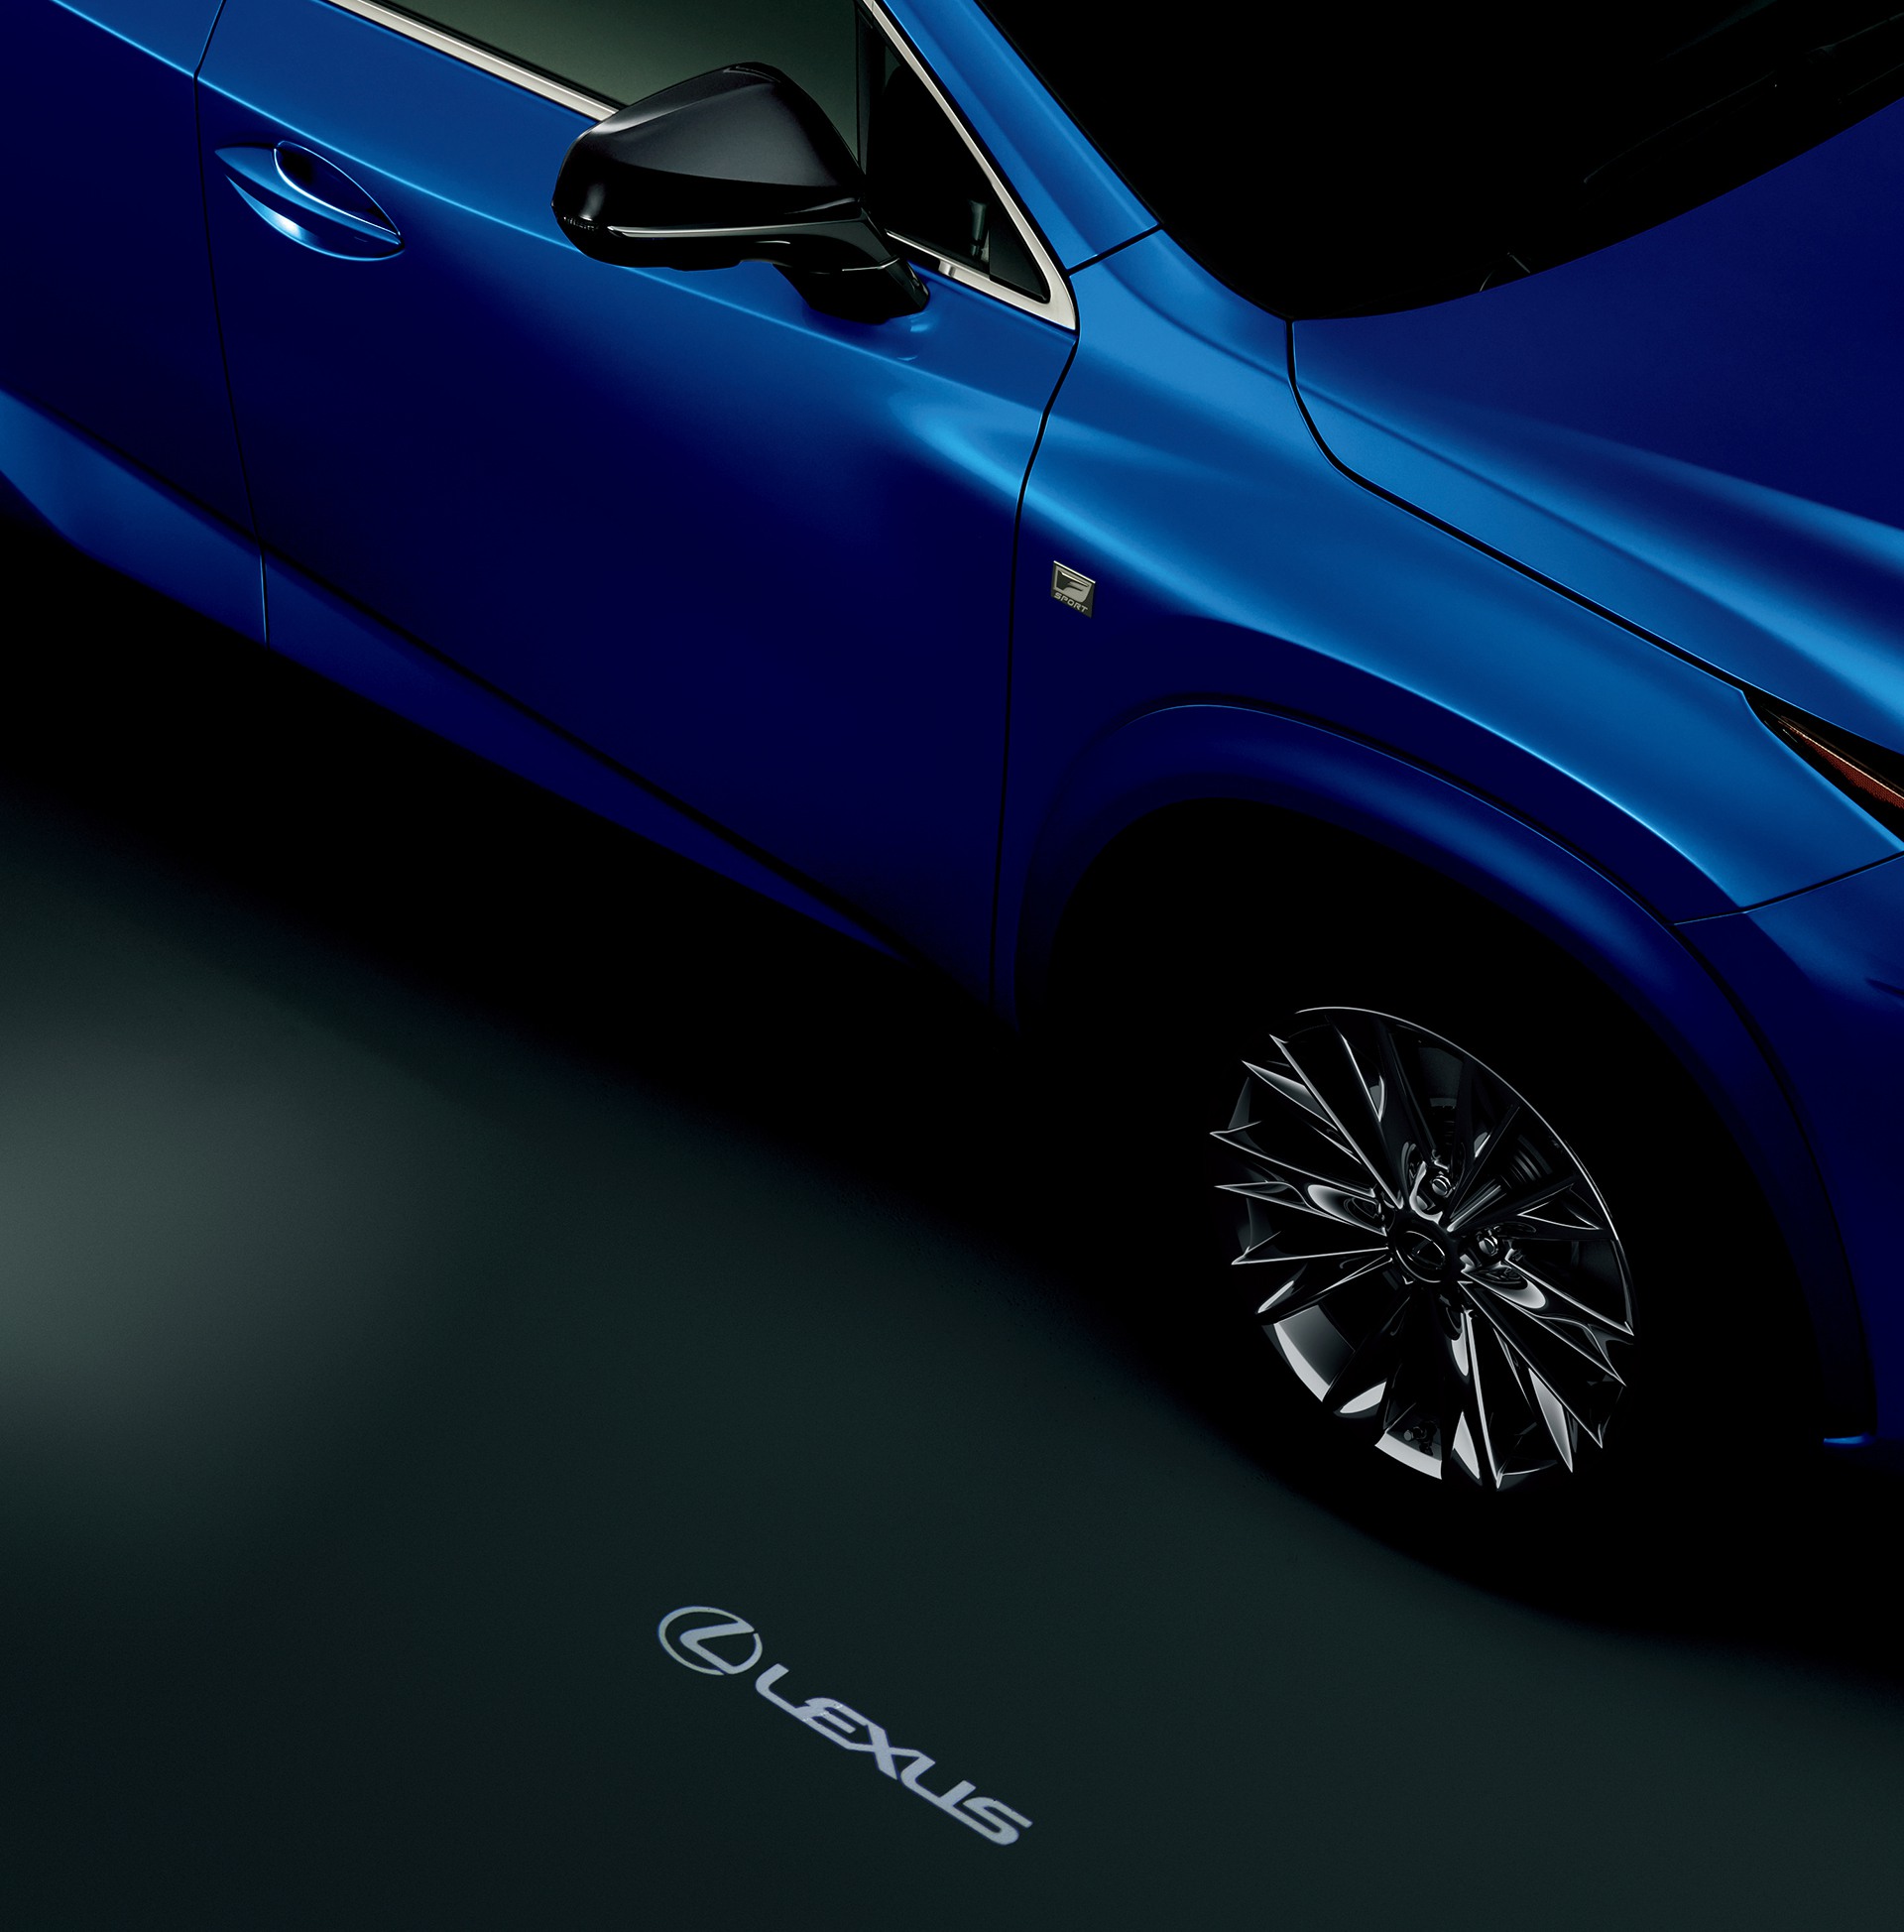 Lexus Nx に特別仕様車 Spice Chic および Cool Bright を設定 レクサス グローバルニュースルーム トヨタ自動車株式会社 公式企業サイト